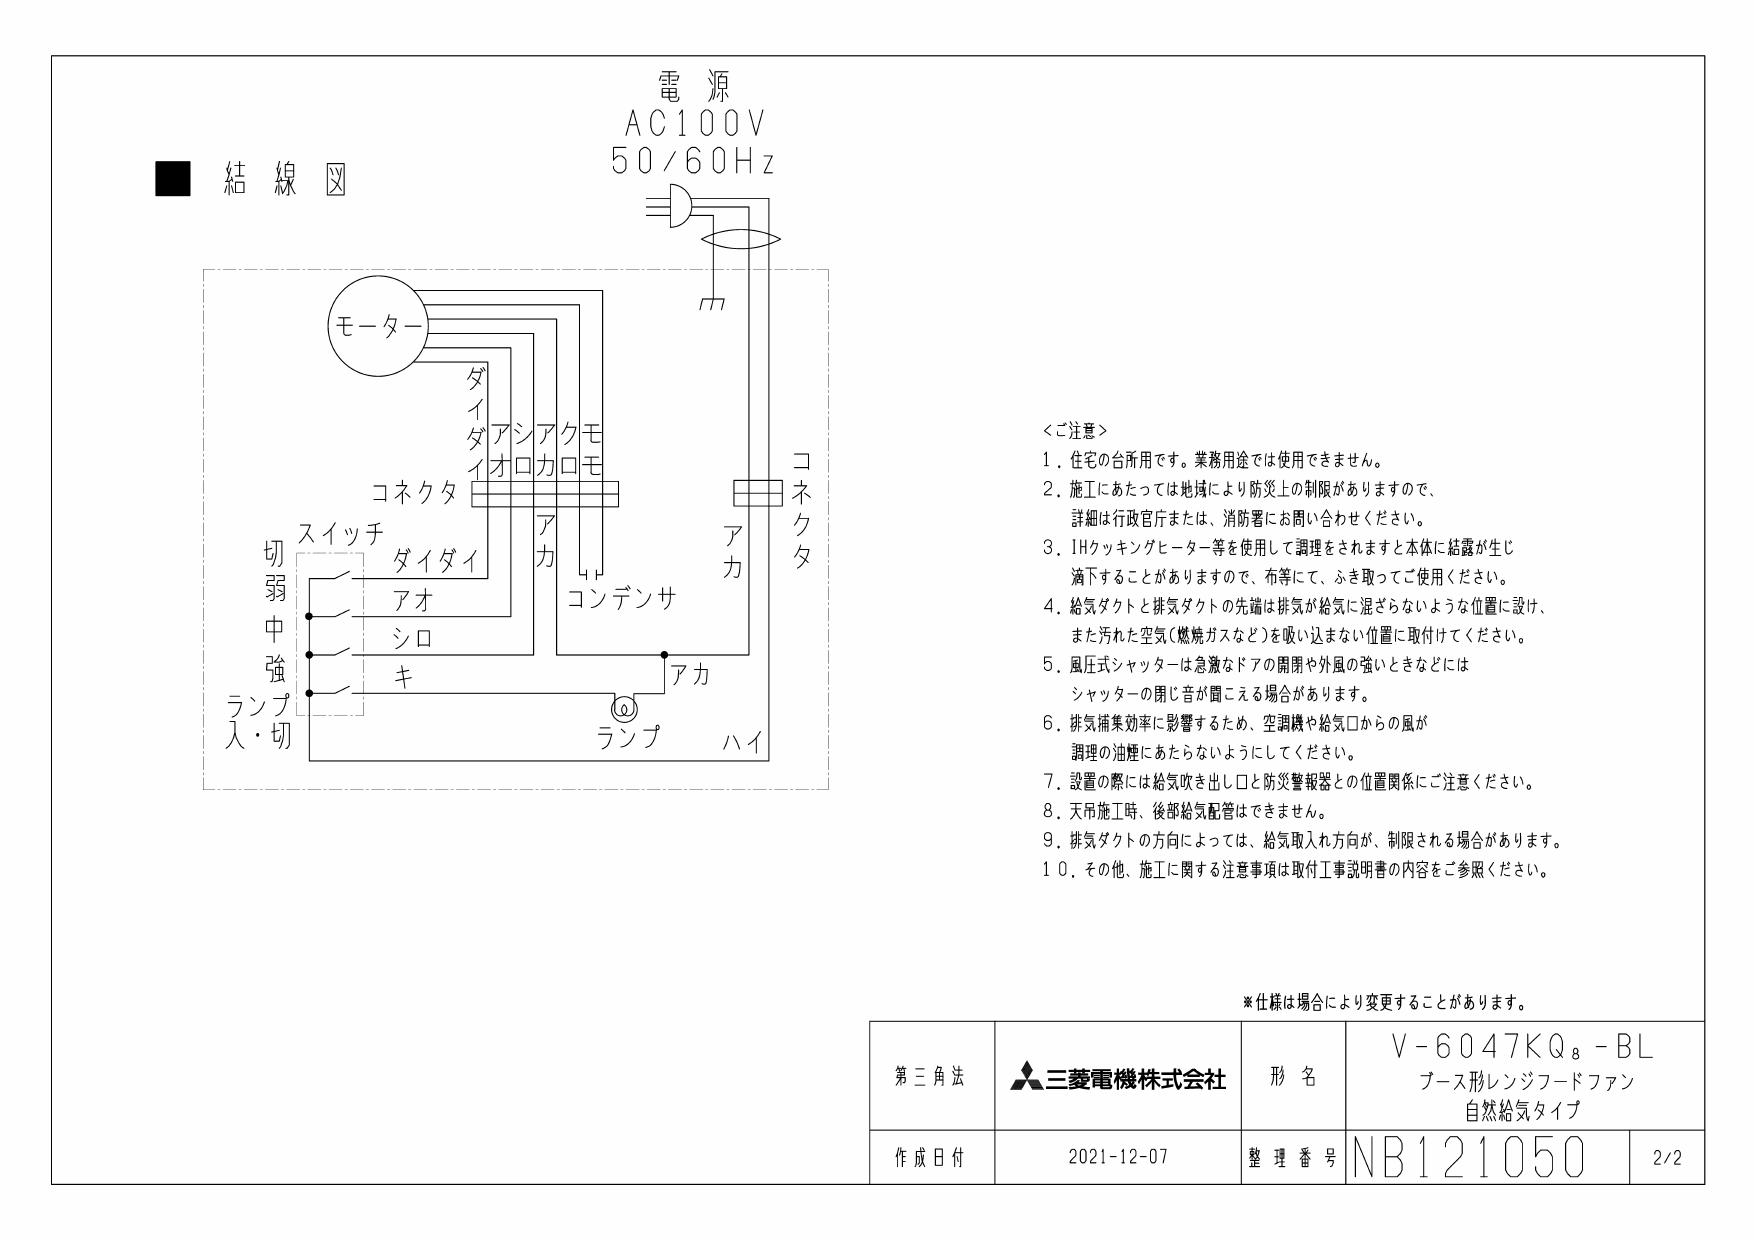 三菱電機 (MITSUBISHI) レンジフードファン ブース形 (深形)・BL認定品 V-6047KL7-BL - 5